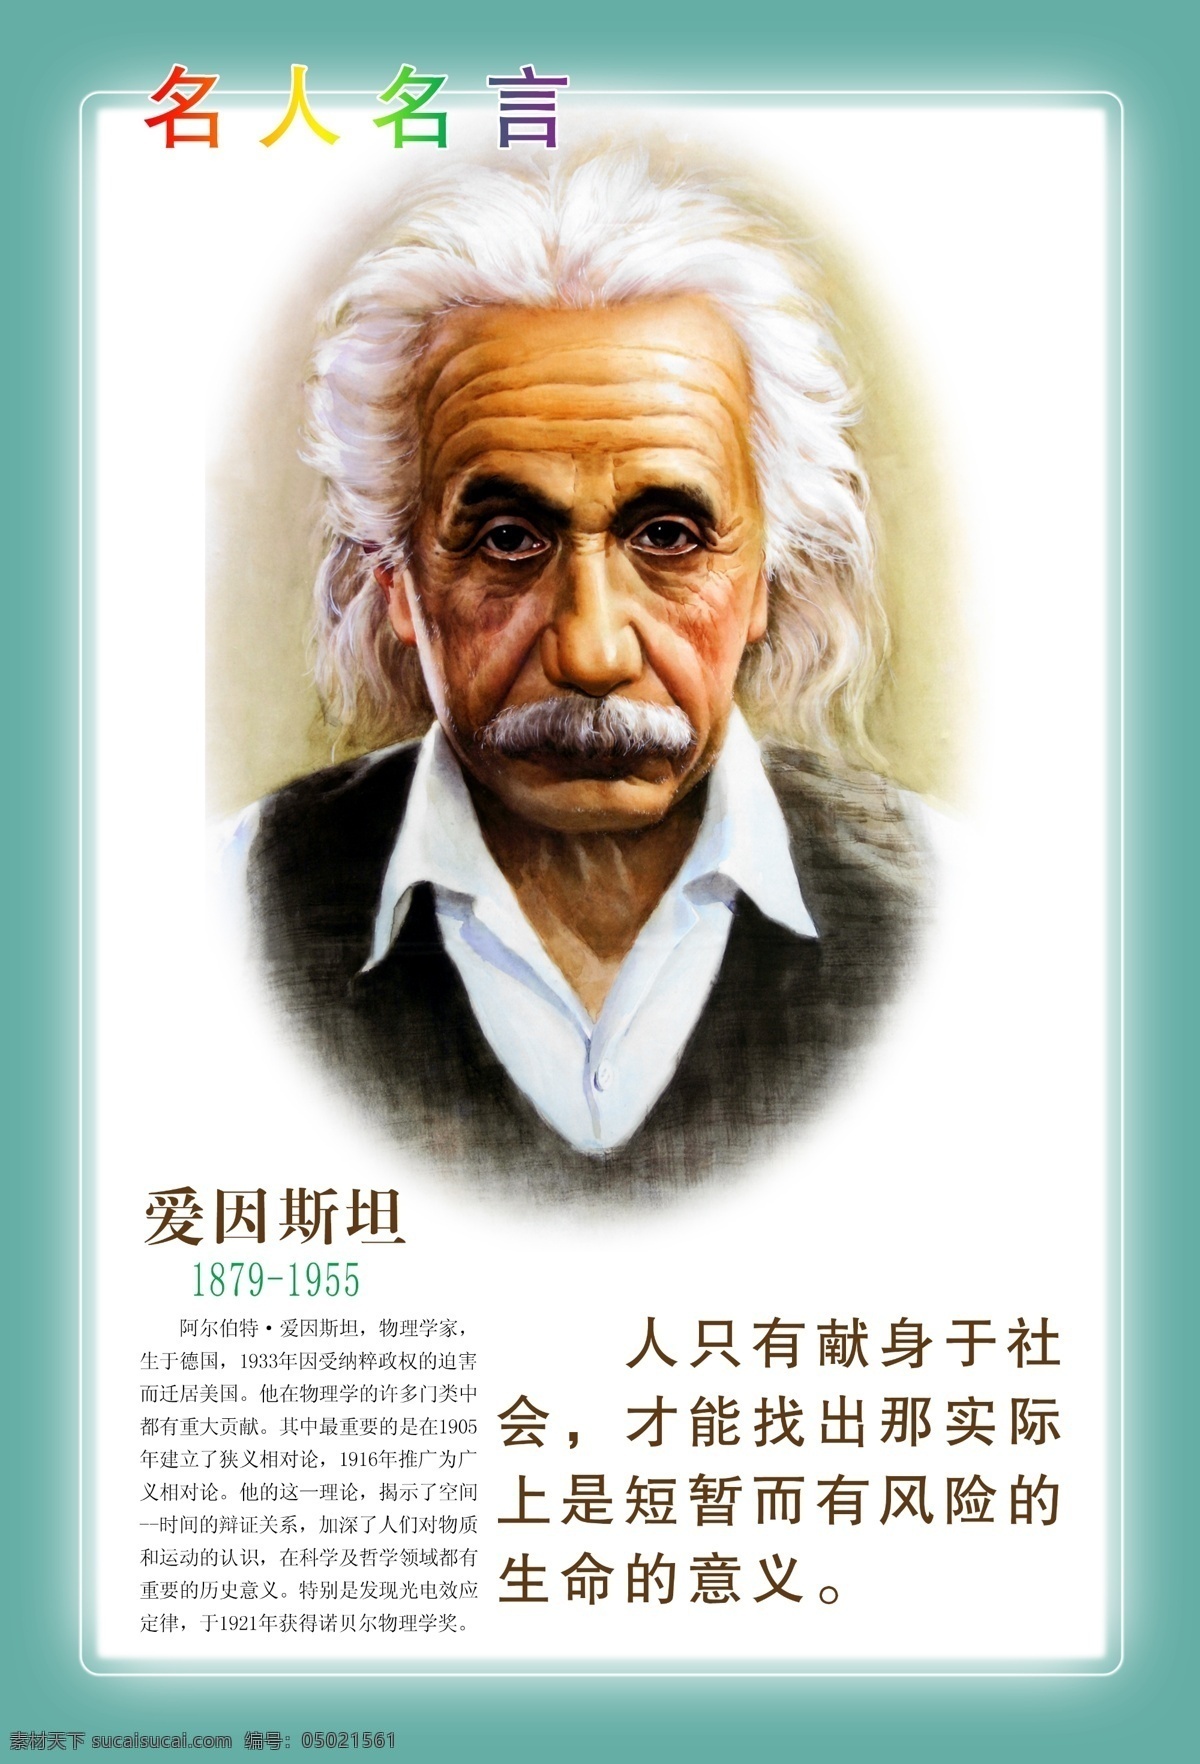 爱因斯坦 名人名言 名人名言素材 名人 名言 教育海报 海报